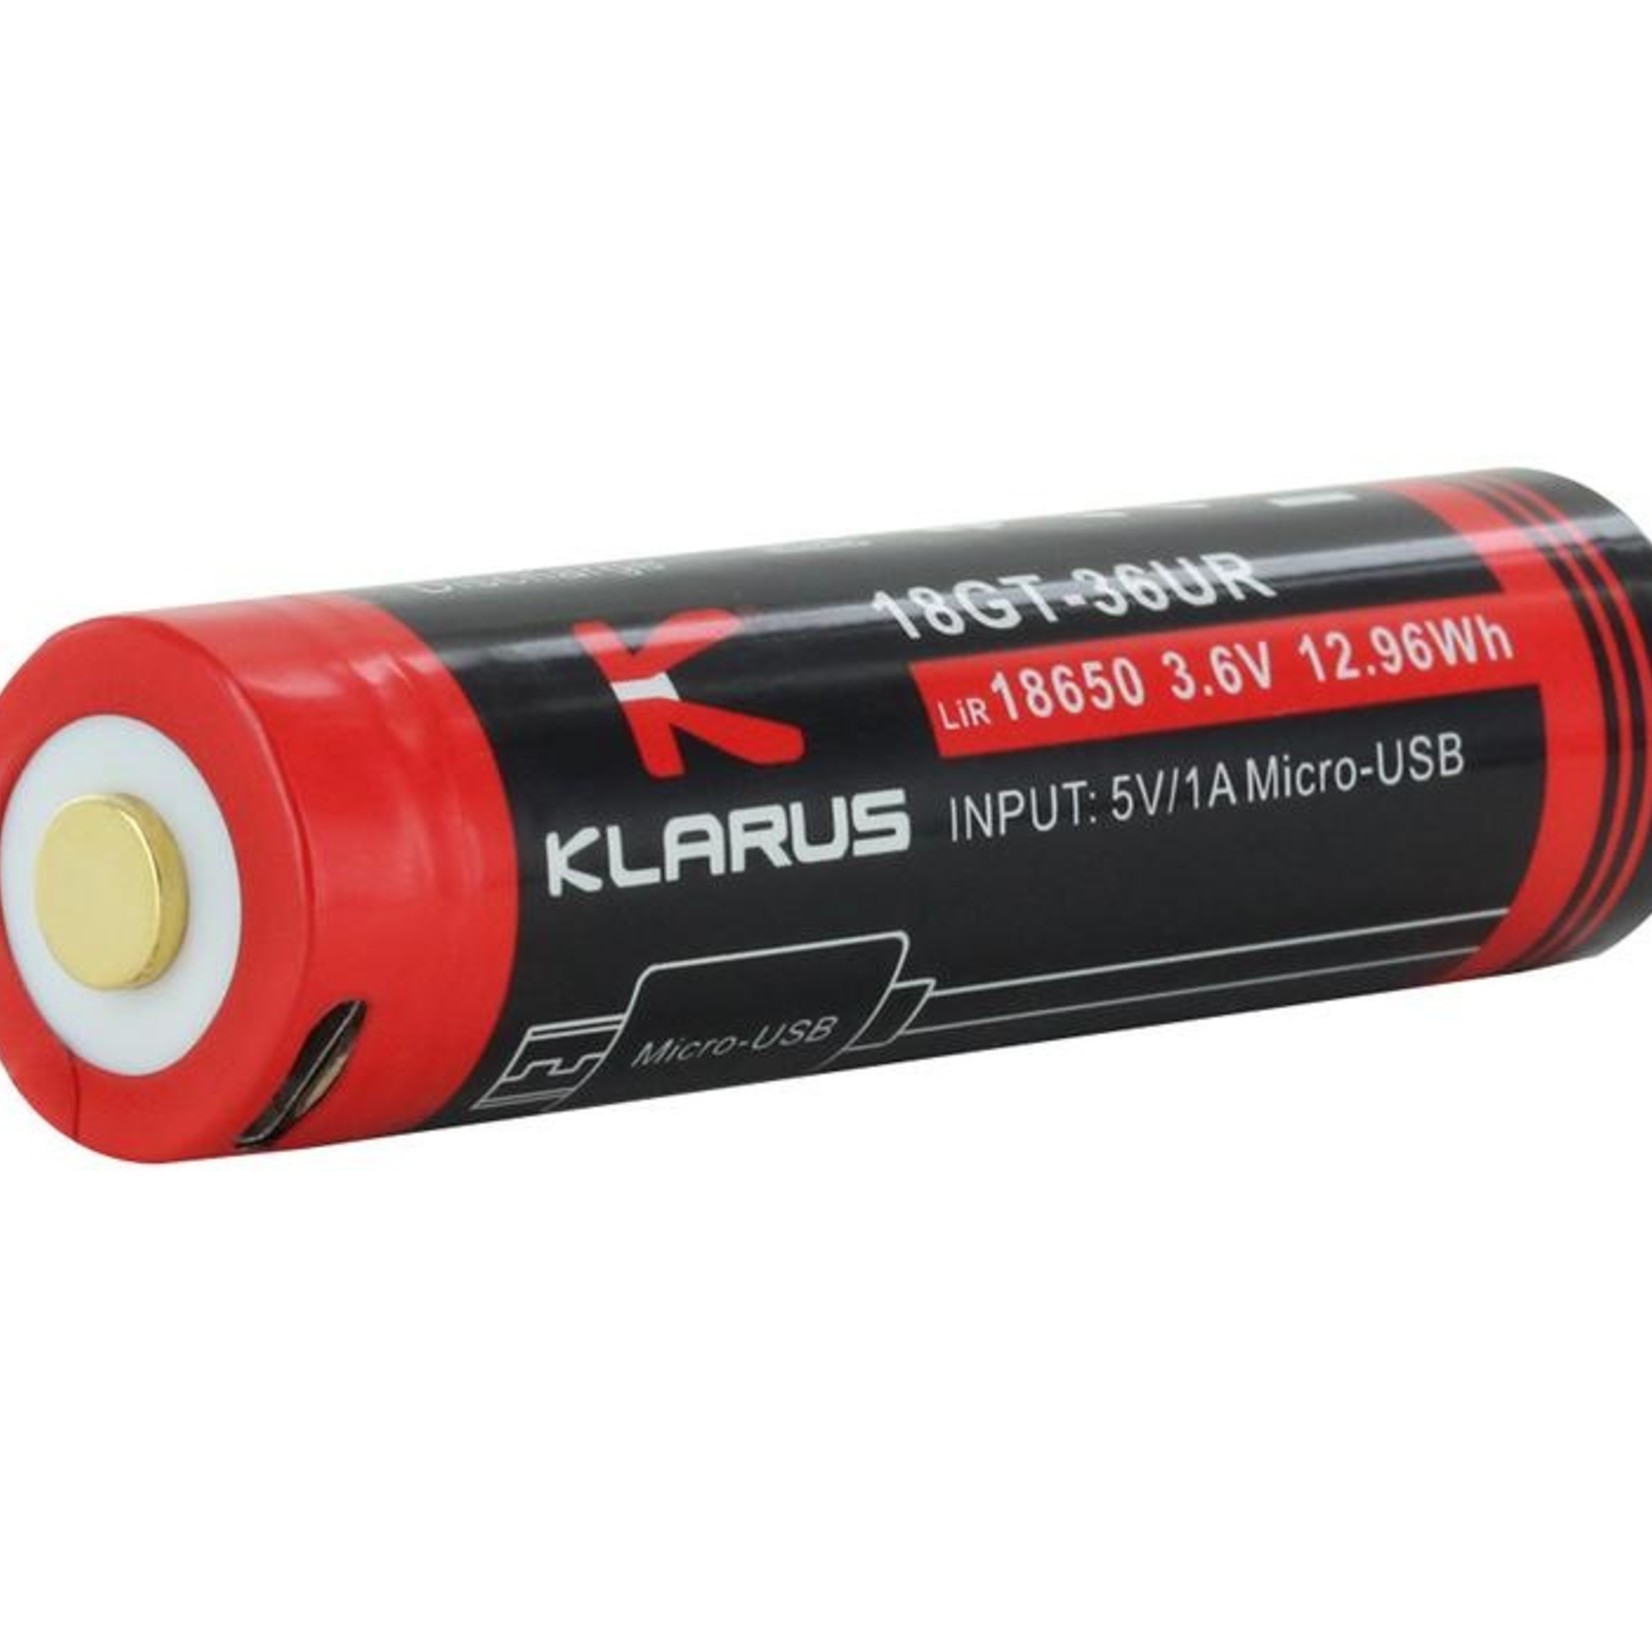 Klarus 3600 mAh Rechargable Battery with USB Port 18GT-36UR 18650